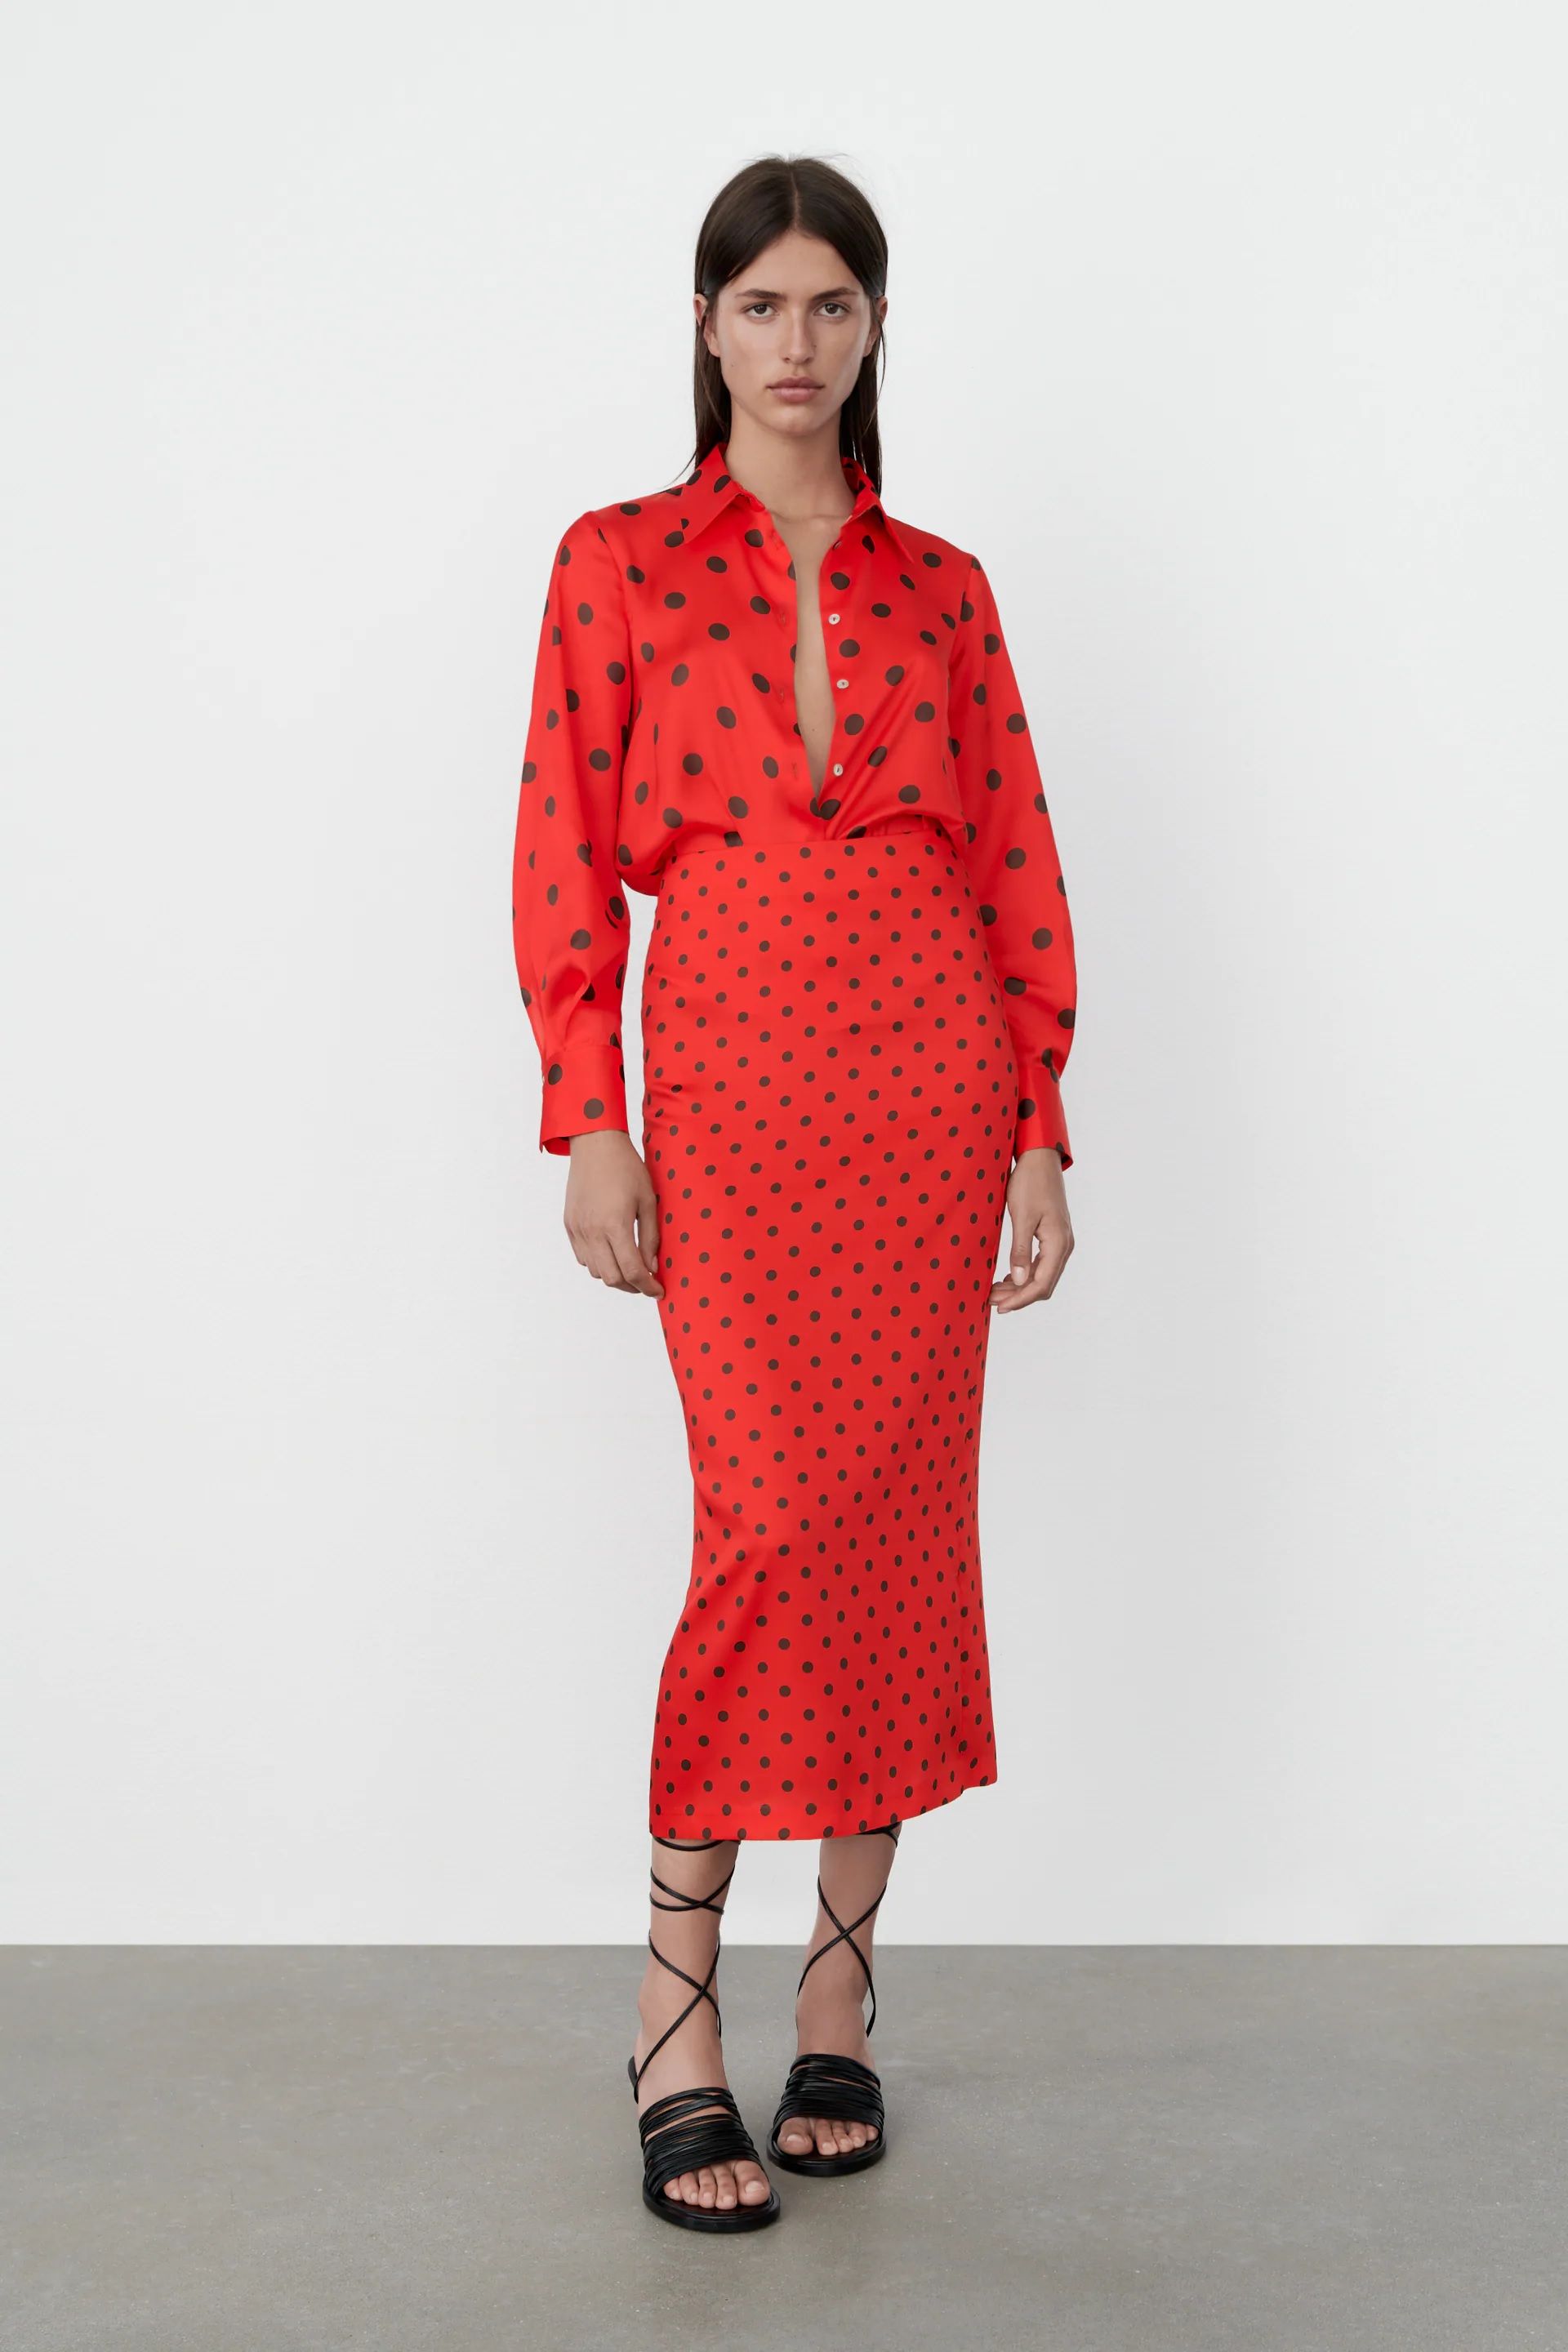 El Zara falda tubo roja, midi y lunares